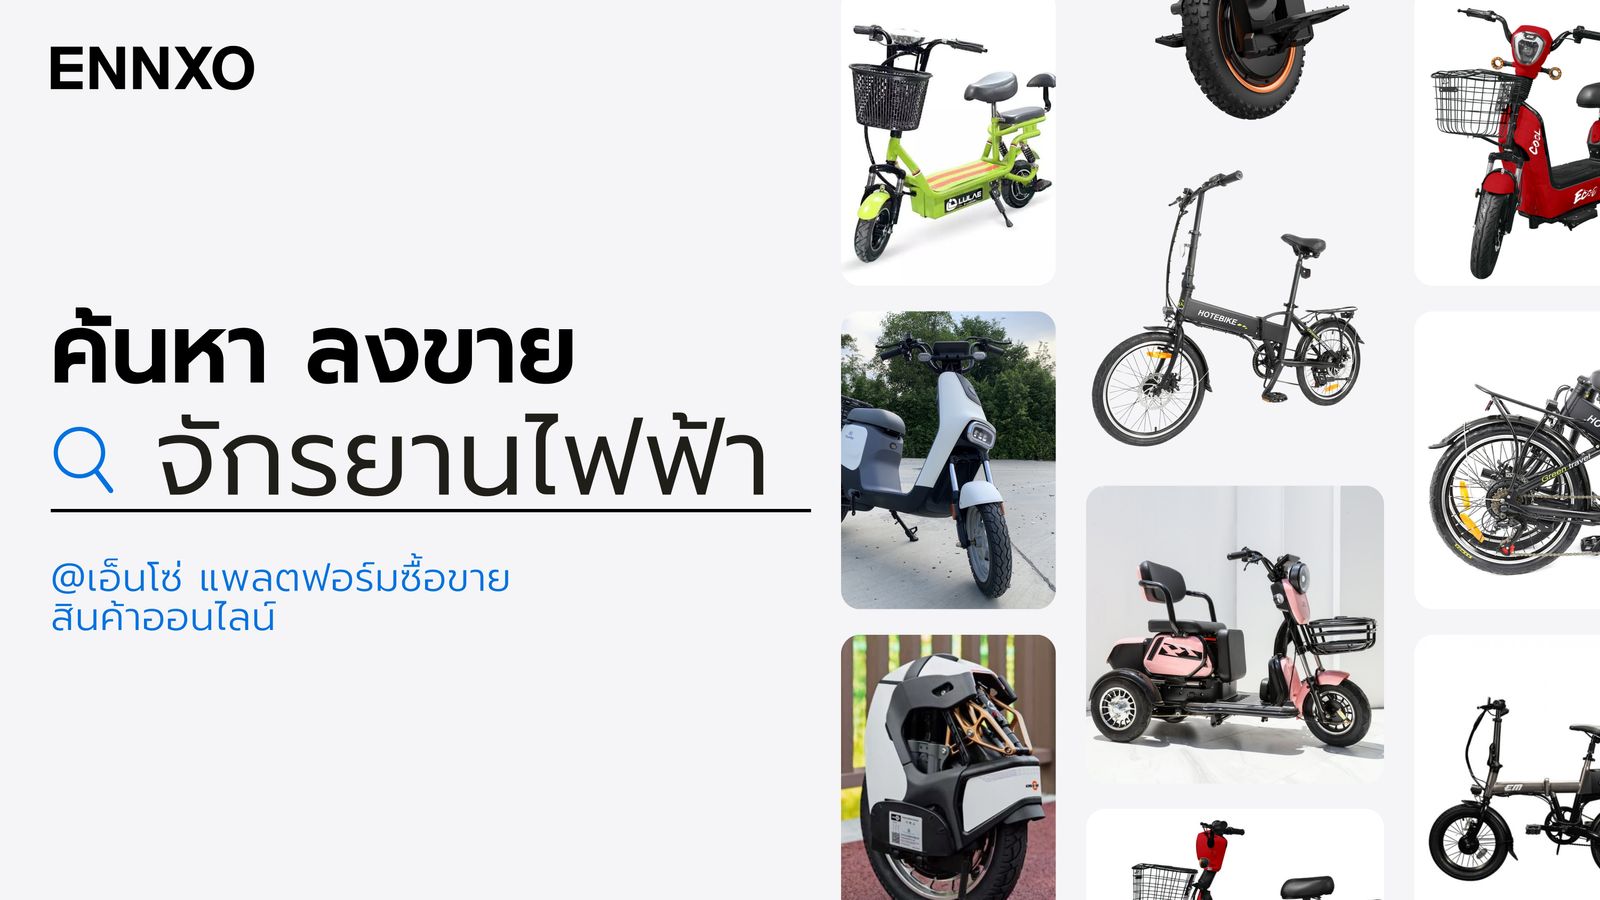 ENNXO แหล่งซื้อขายจักรยานไฟฟ้าทุกประเภท ยี่ห้อและรุ่นออนไลน์